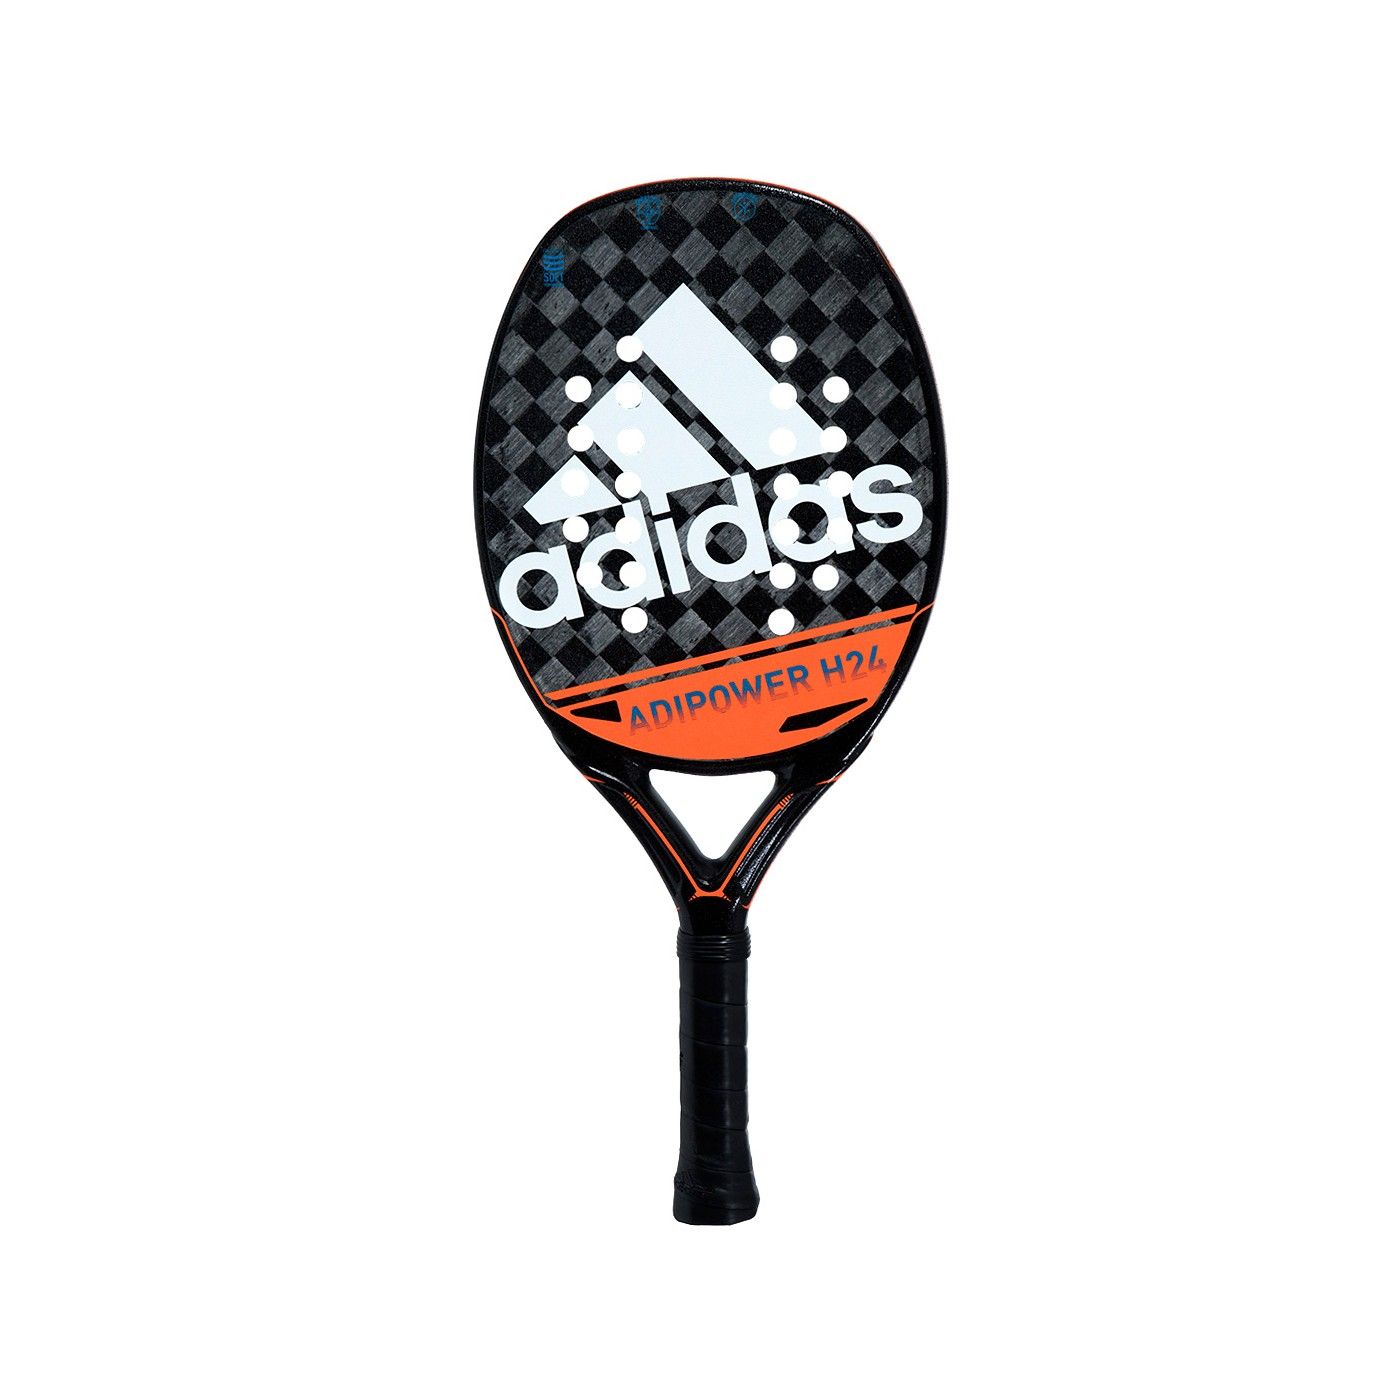 Tennis Adidas H24 OFERTAS DE PADEL